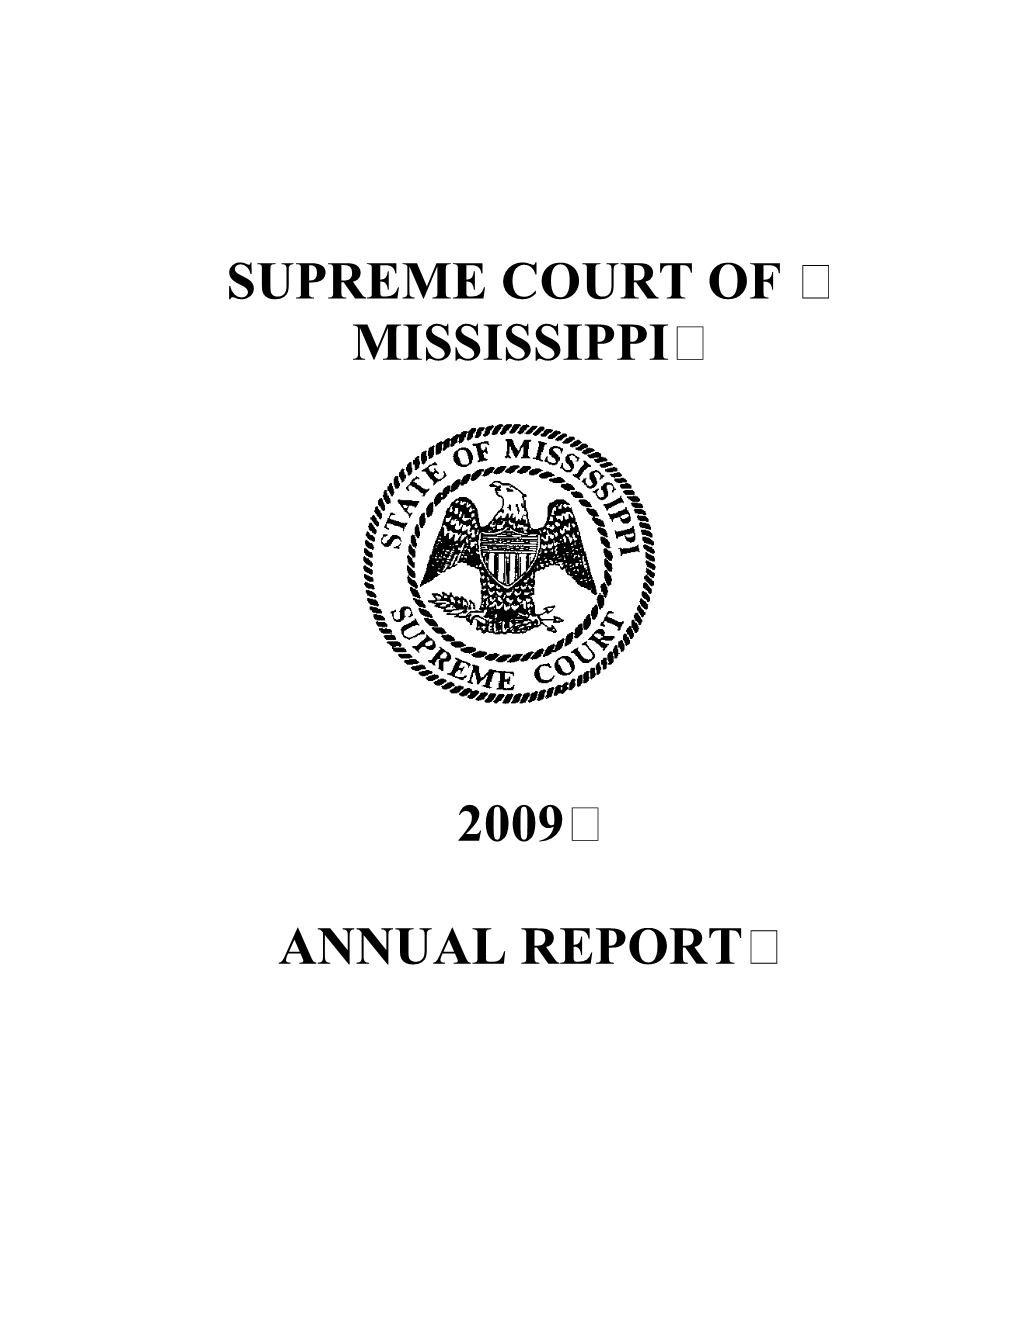 Supreme Court Annual Report